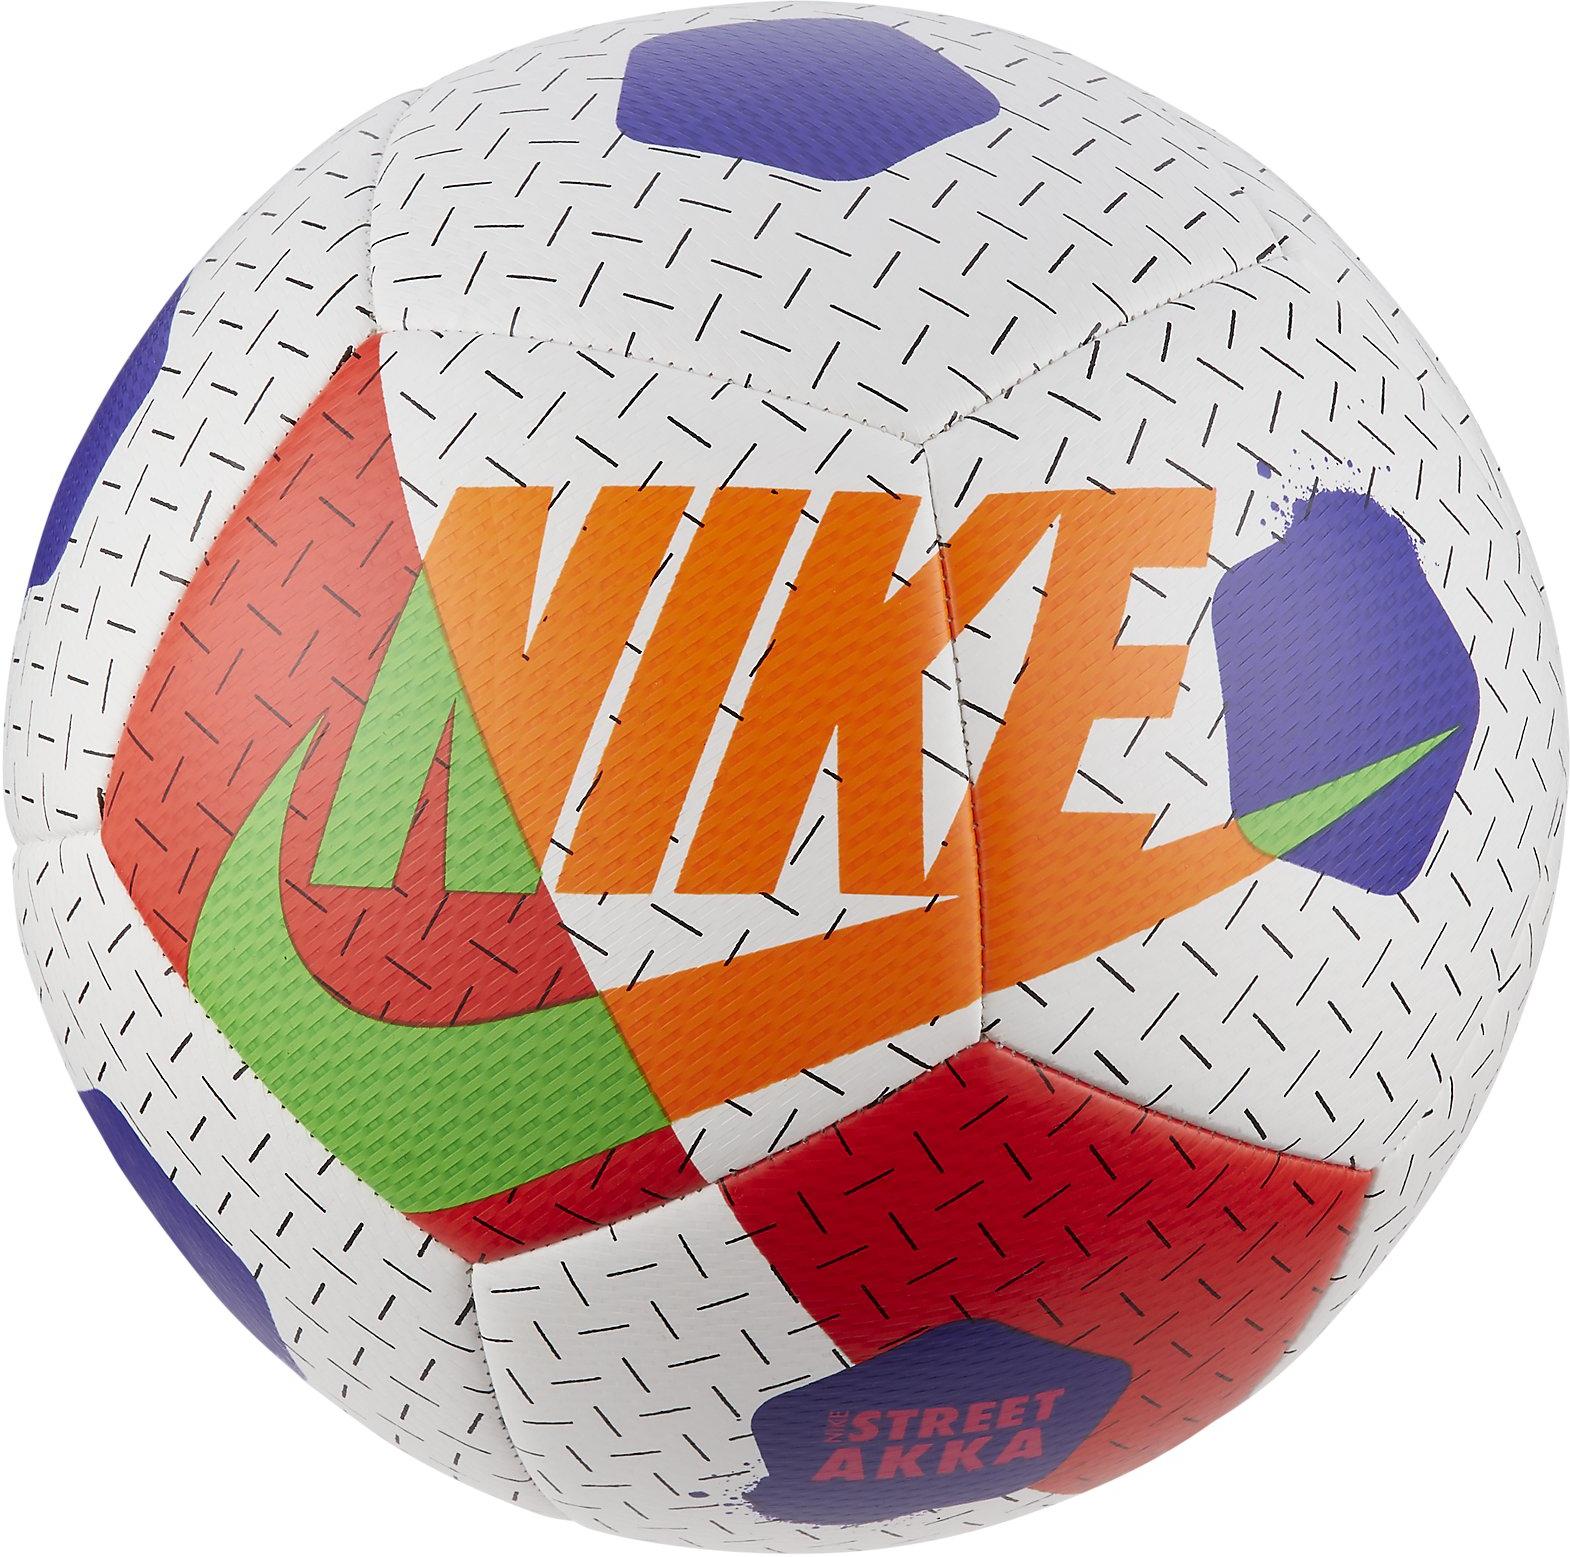 Fotbalový míč pro hraní v ulicích Nike Akka